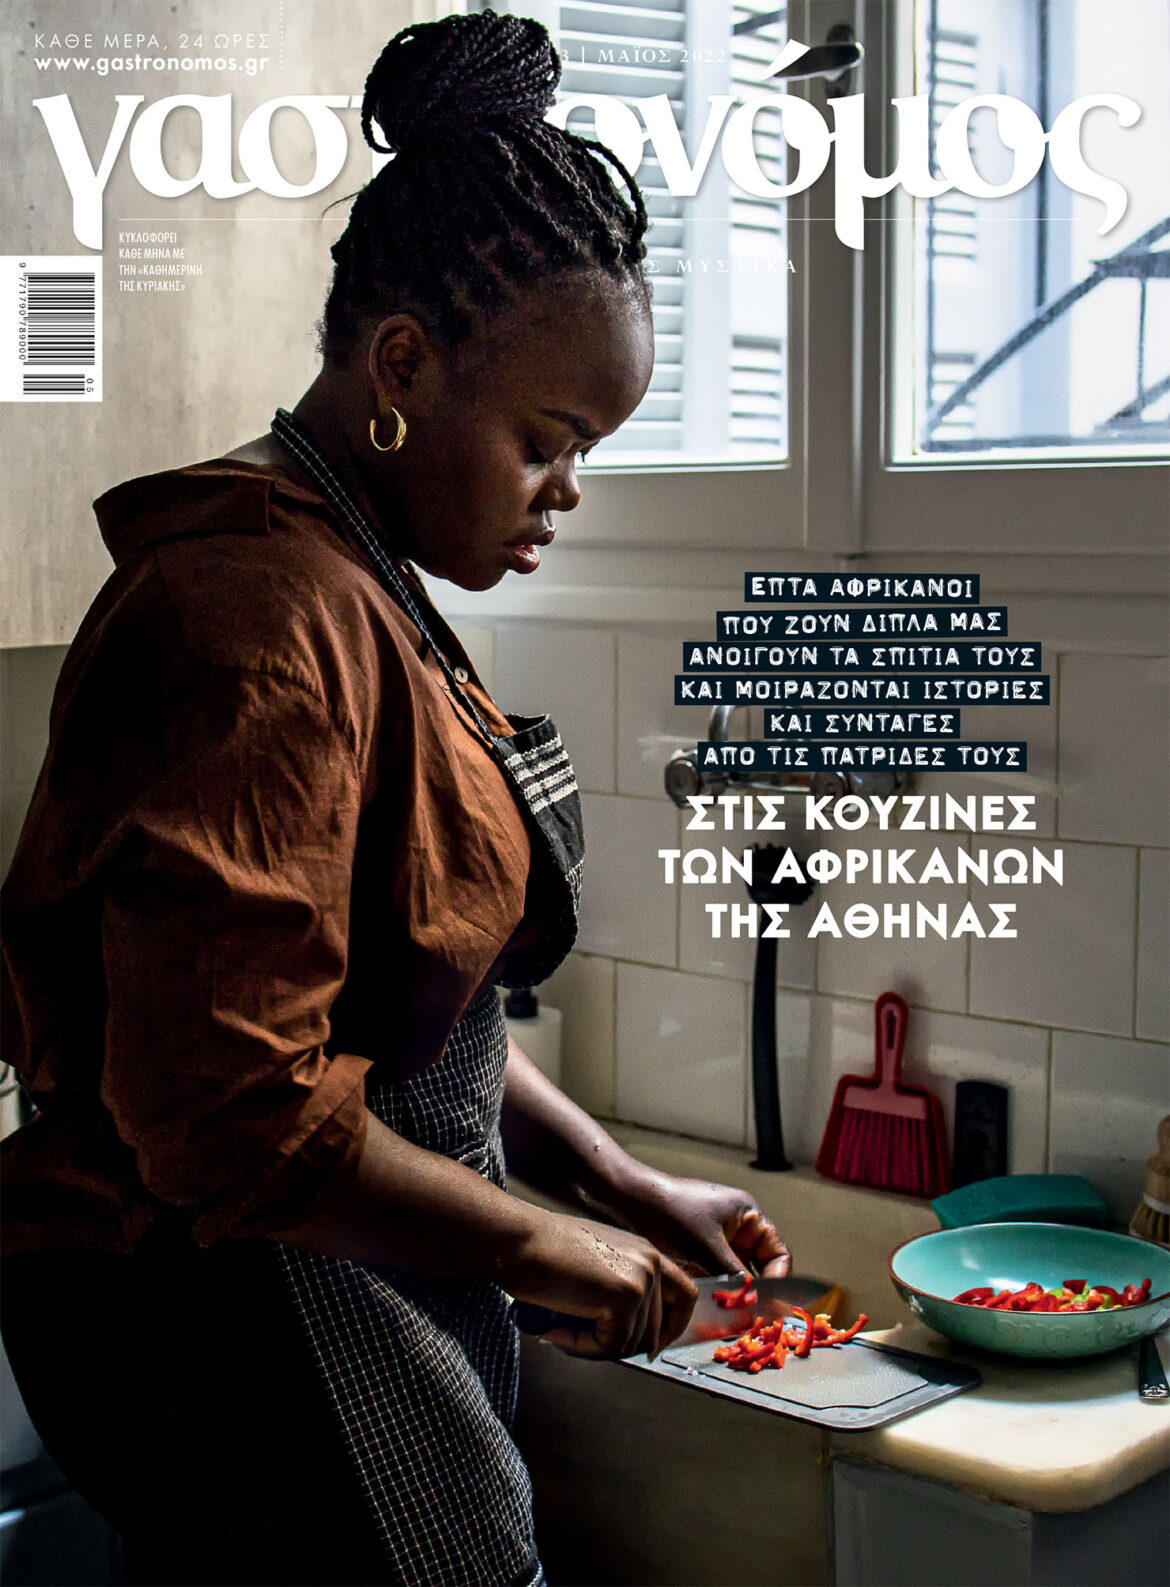 Ο Γαστρονόμος Μαΐου μπαίνει στις κουζίνες των Αφρικανών της Αθήνας